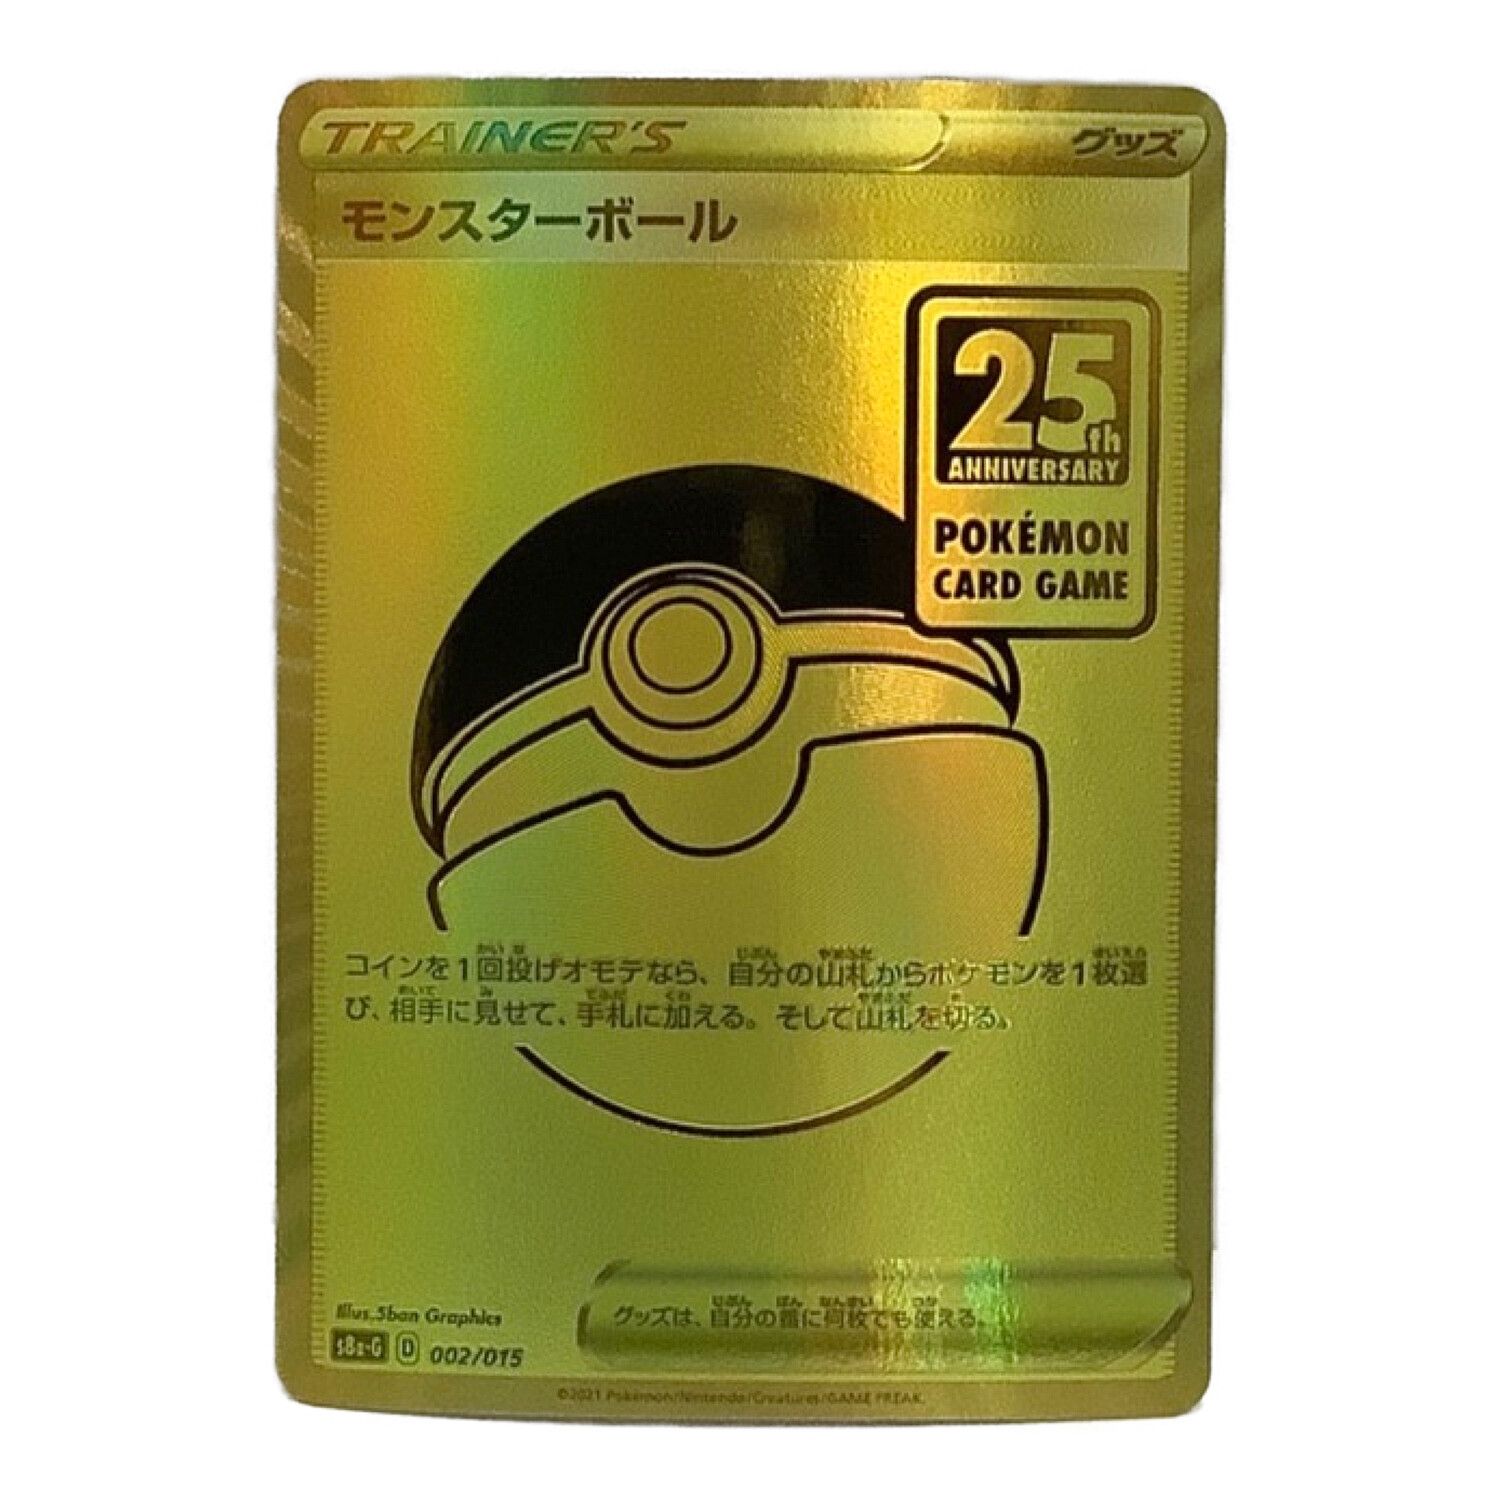 ポケモンカード 25th ANNIVERSARY GOLDEN BOX仕様 モンスター